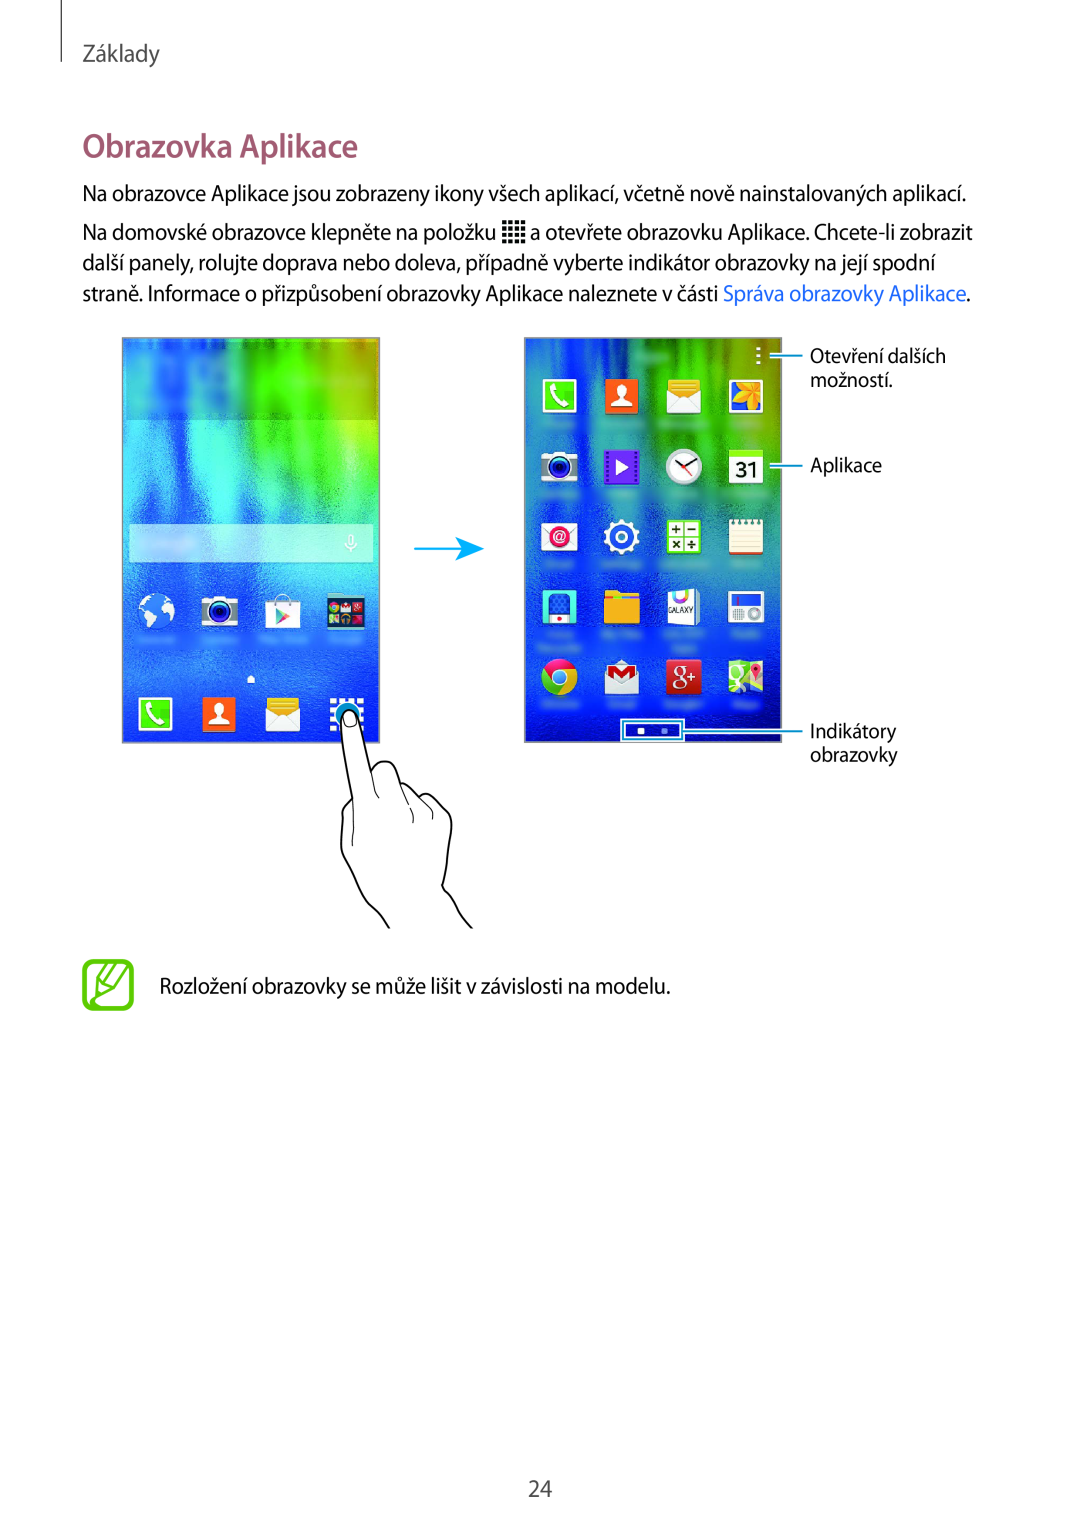 Samsung SM-J100HZKDATO manual Obrazovka Aplikace, Základy, Rozložení obrazovky se může lišit v závislosti na modelu 